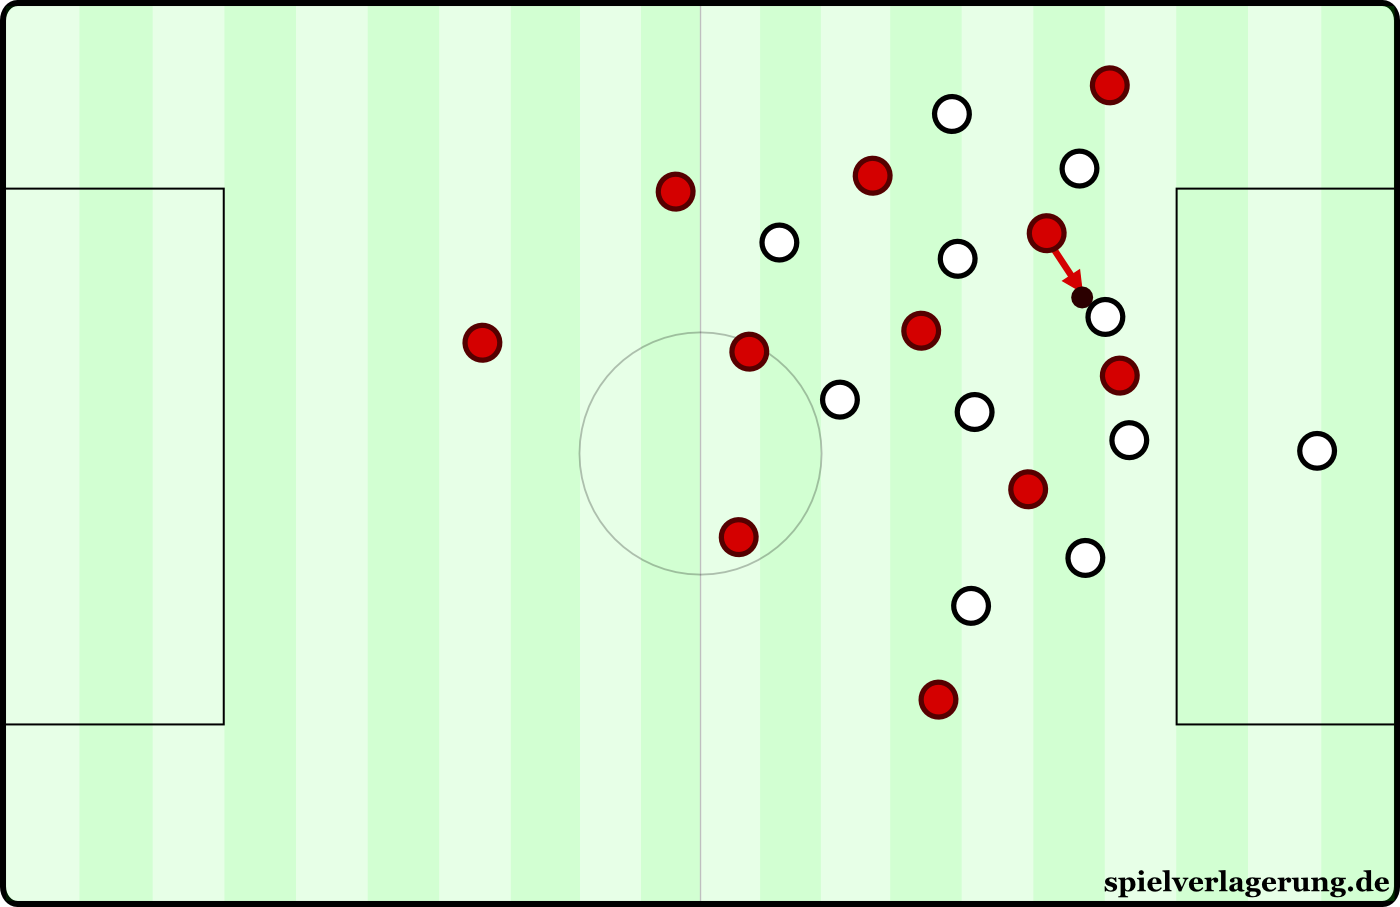 Anlaufverhalten:  Durchlaufen. Simpel und übersichtlich zeigt diese Grafik einfach ein aggressives Attackieren auf den Ball. 